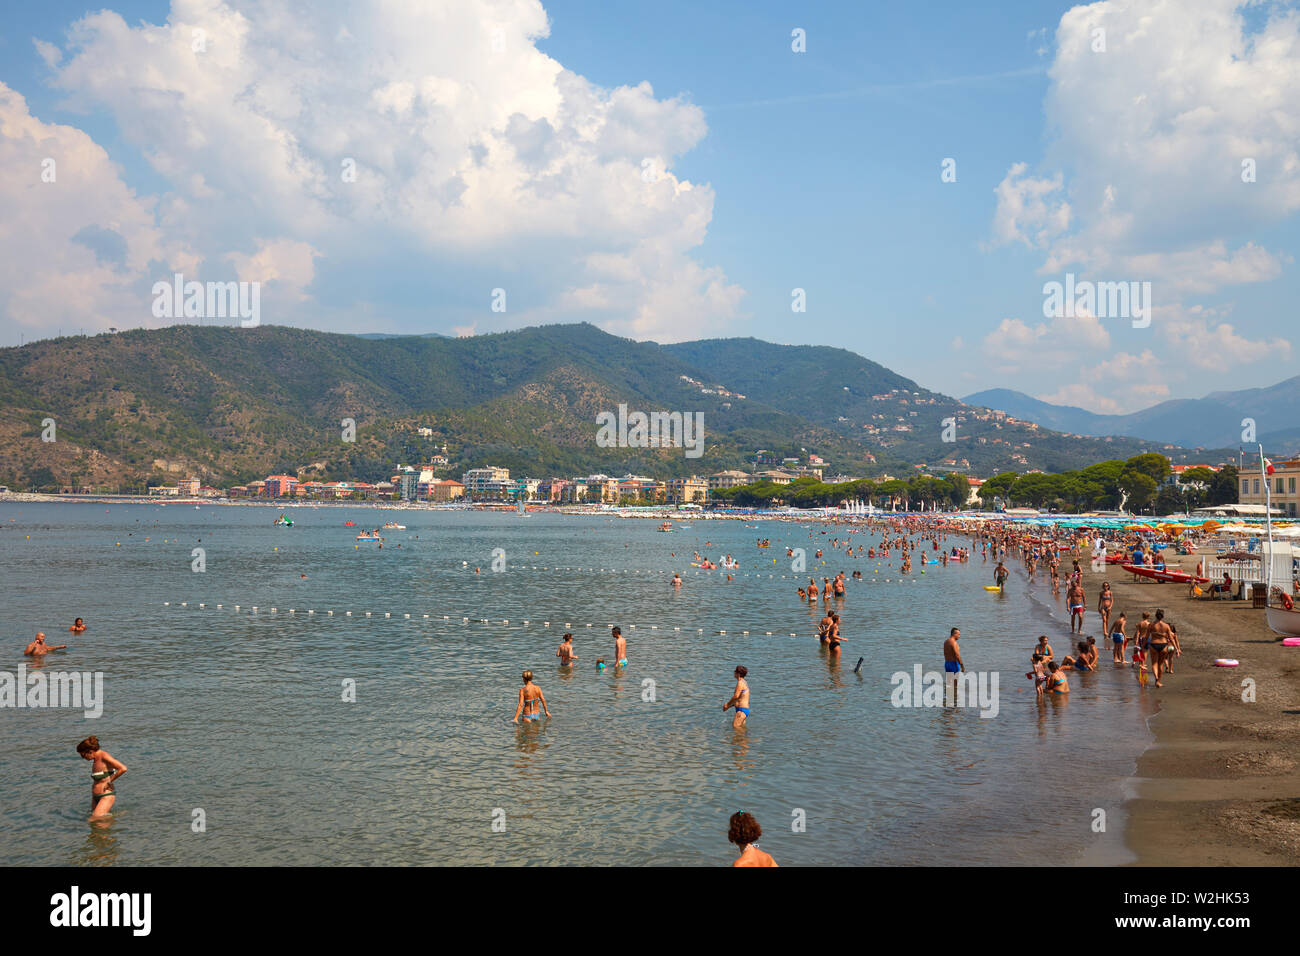 SESTRI LEVANTE, ITALIE - 23 août 2018 : Sestri Levante, littoral de la côte avec des gens dans une journée ensoleillée en Italie Banque D'Images